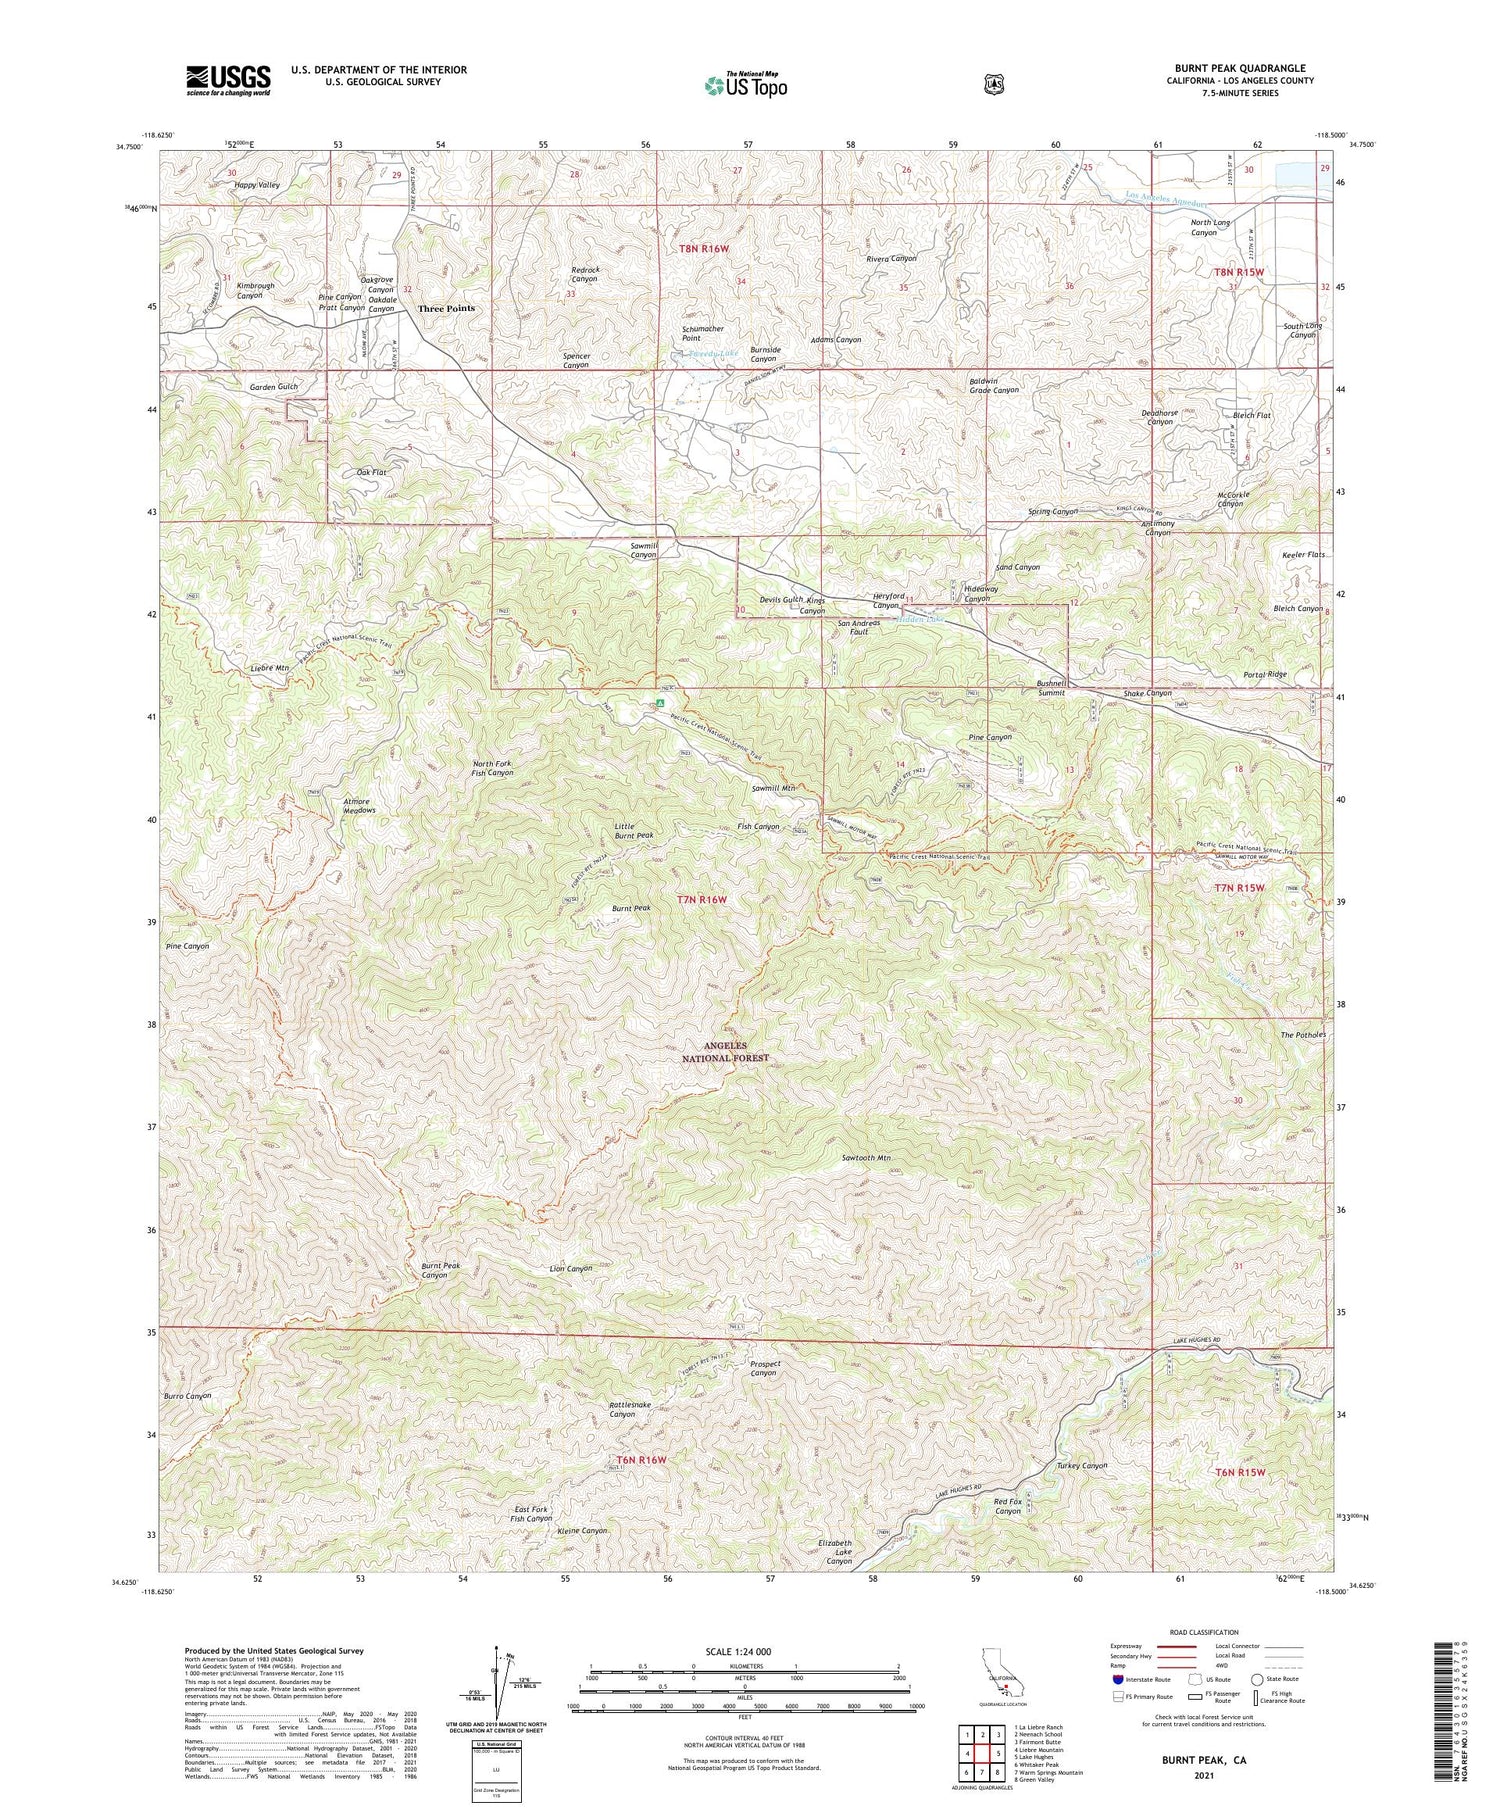 Burnt Peak California US Topo Map Image